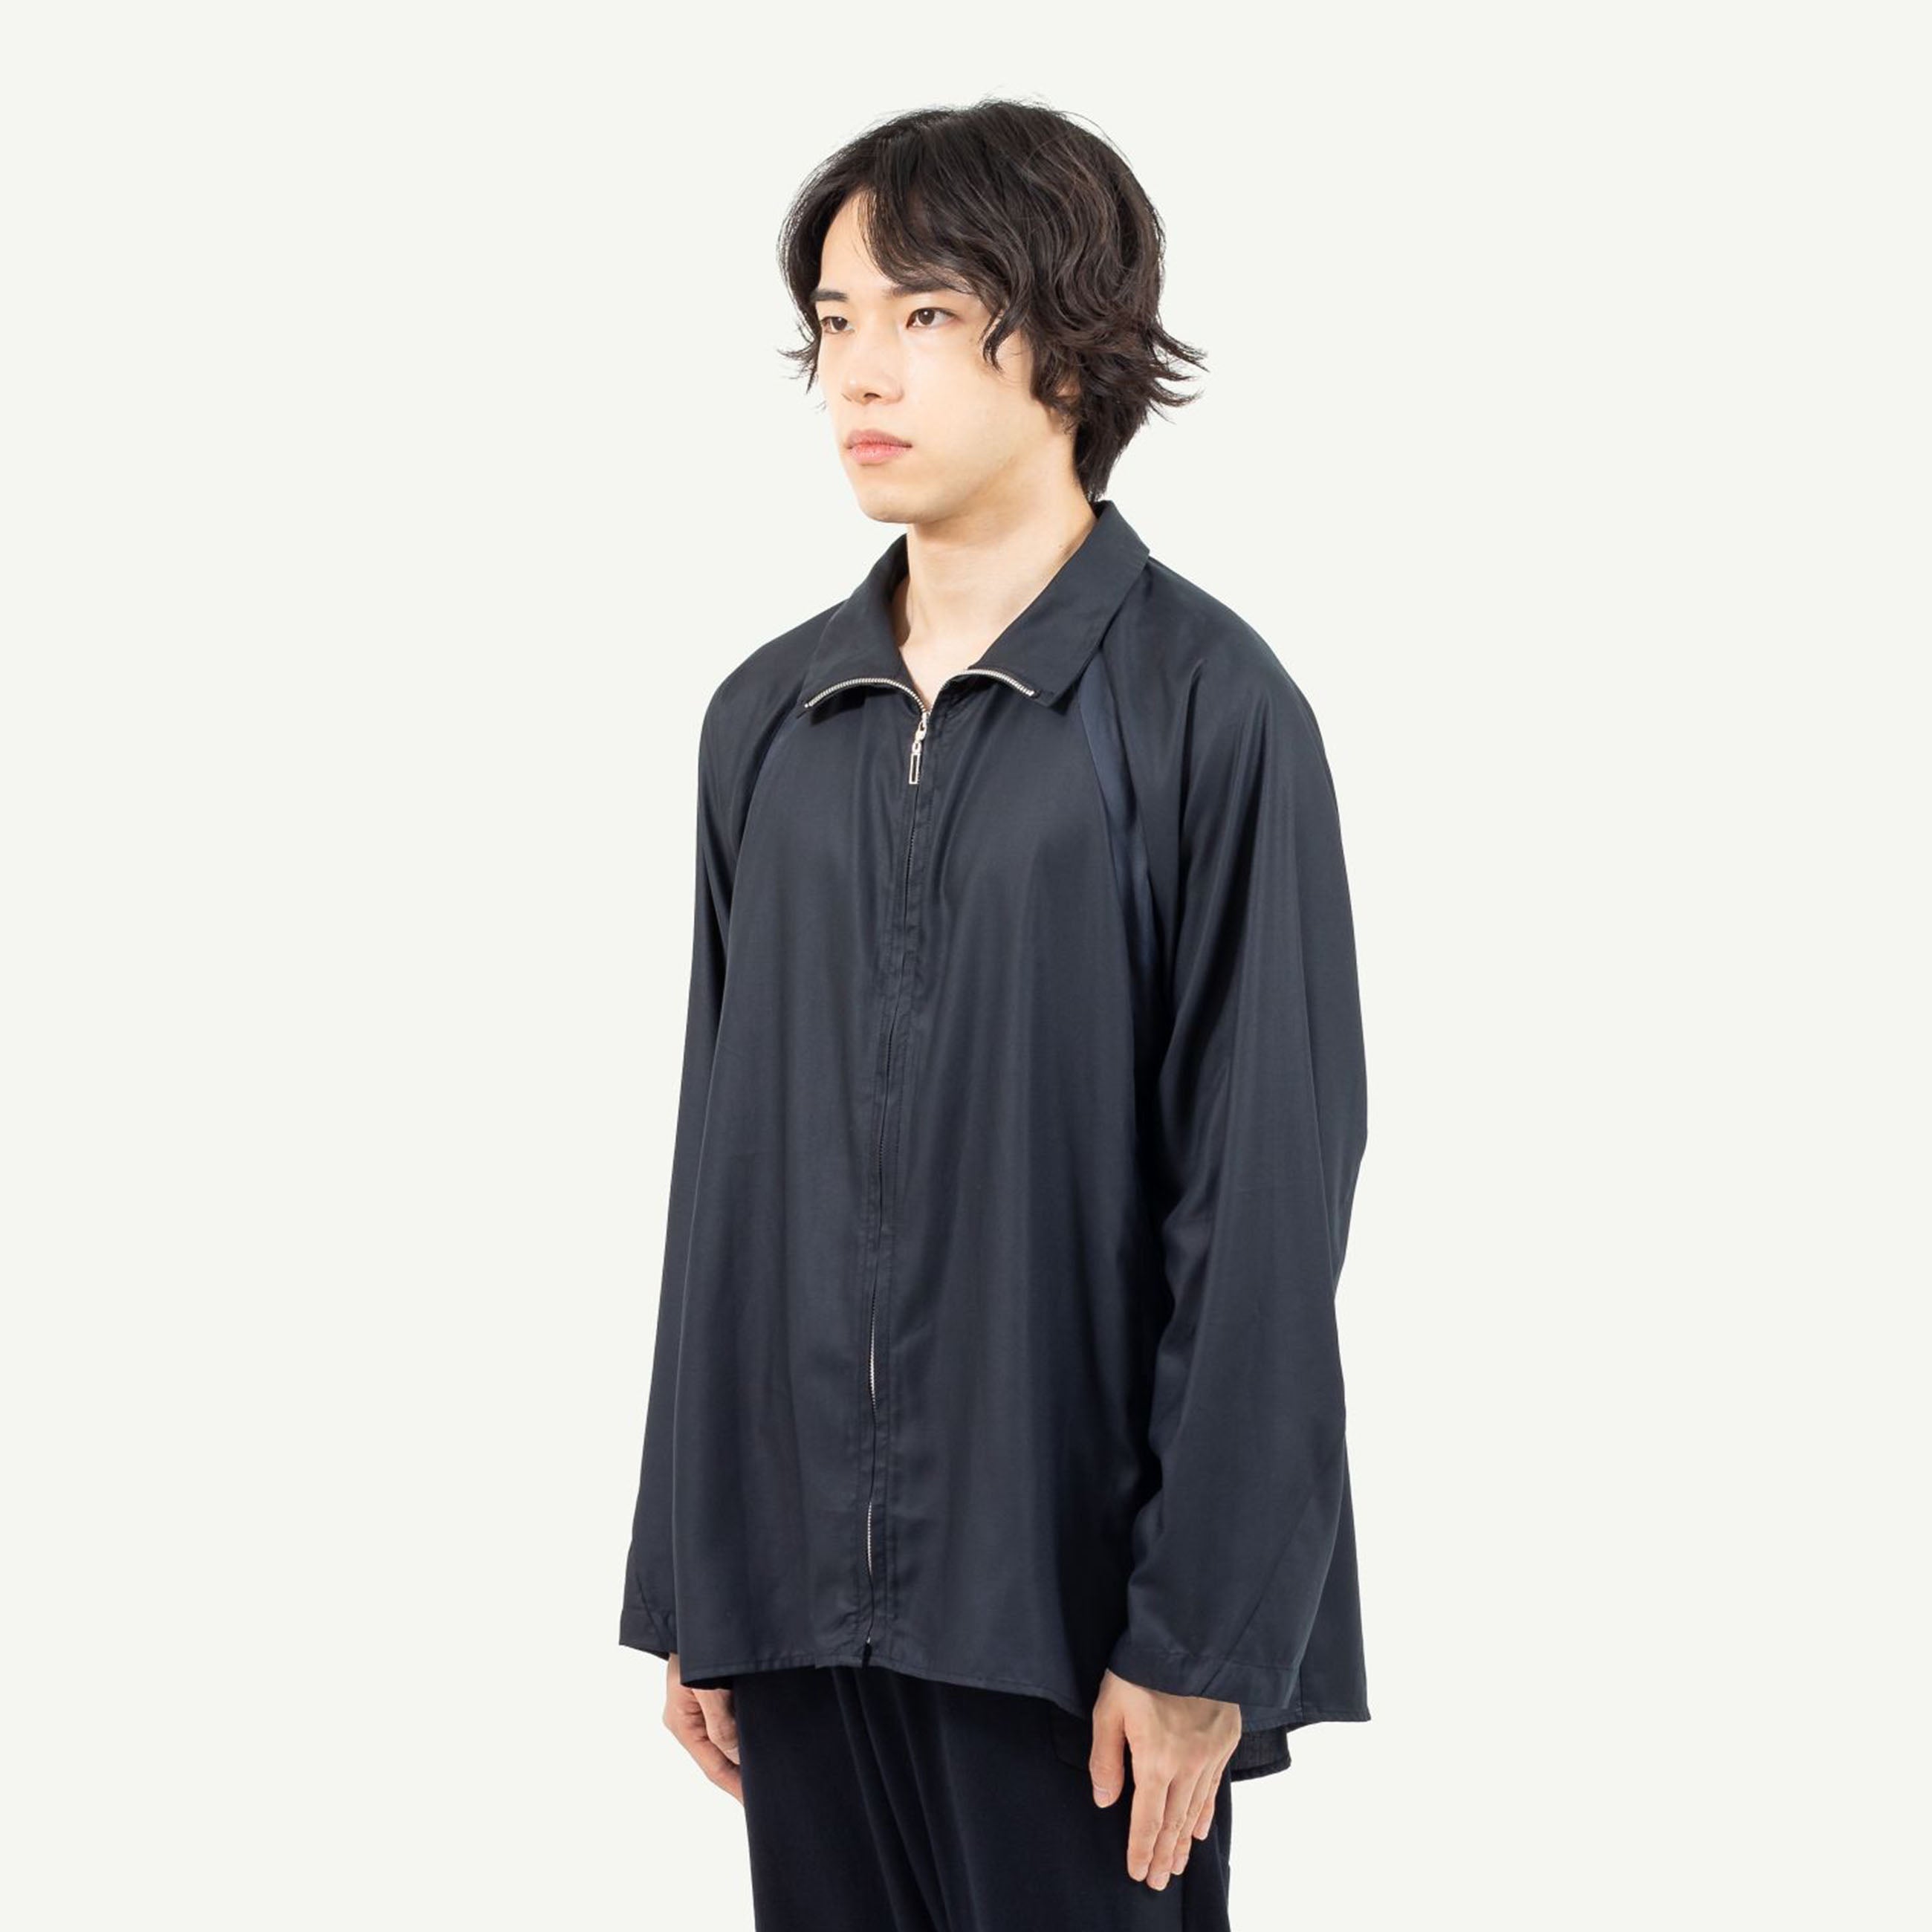 【セール国産】kinema ombre zip shirt オンブレジップシャツ 試着のみ ジャケット・アウター